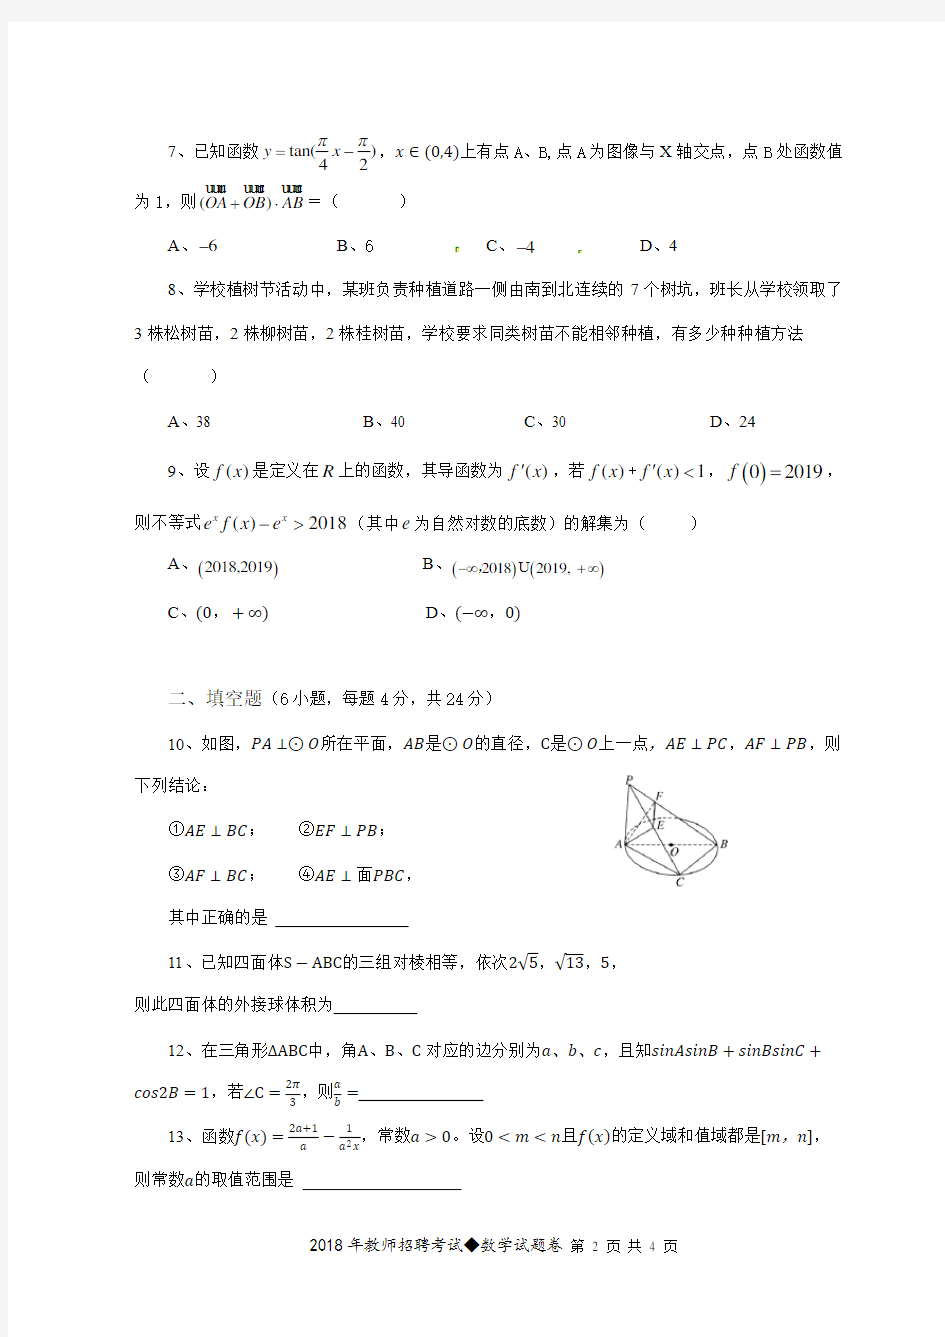 湘潭县一中 2018教师招聘考试数学试题